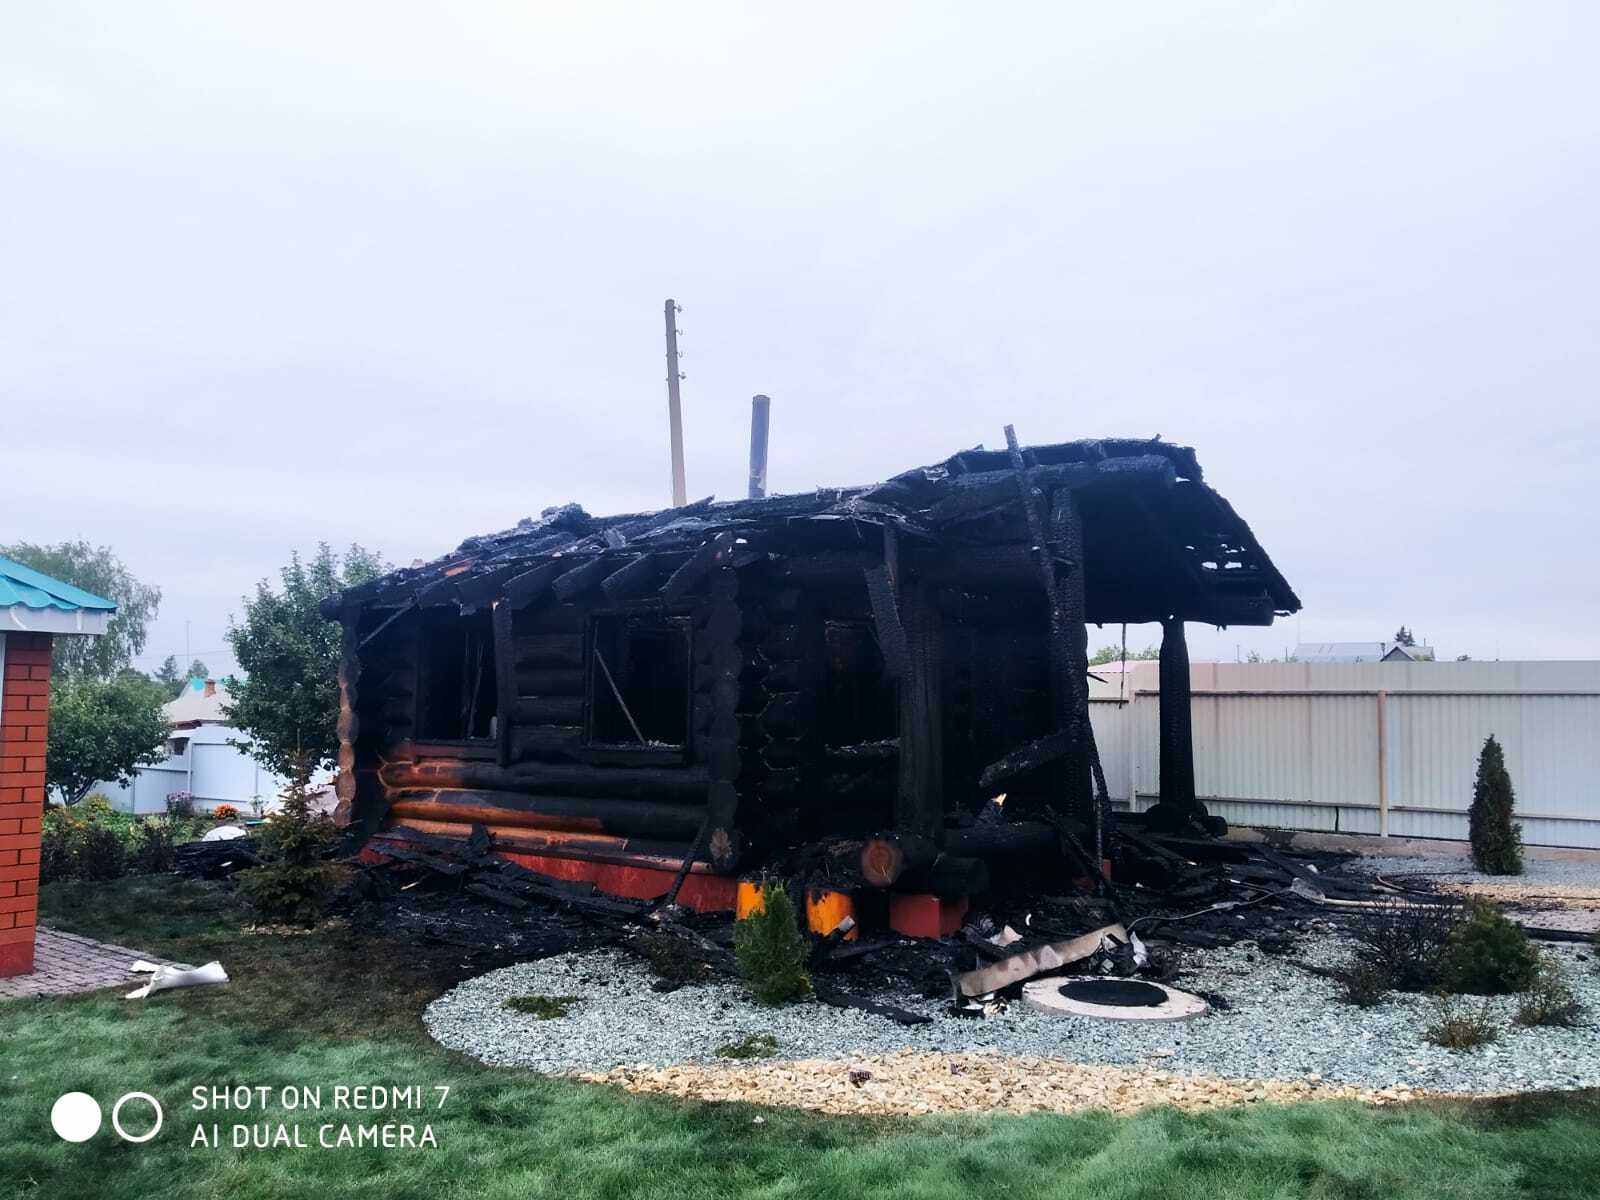 Пожар за пожаром. Ущерб в один миллион рублей от возгорания в селе Узытамак Чишминского района.